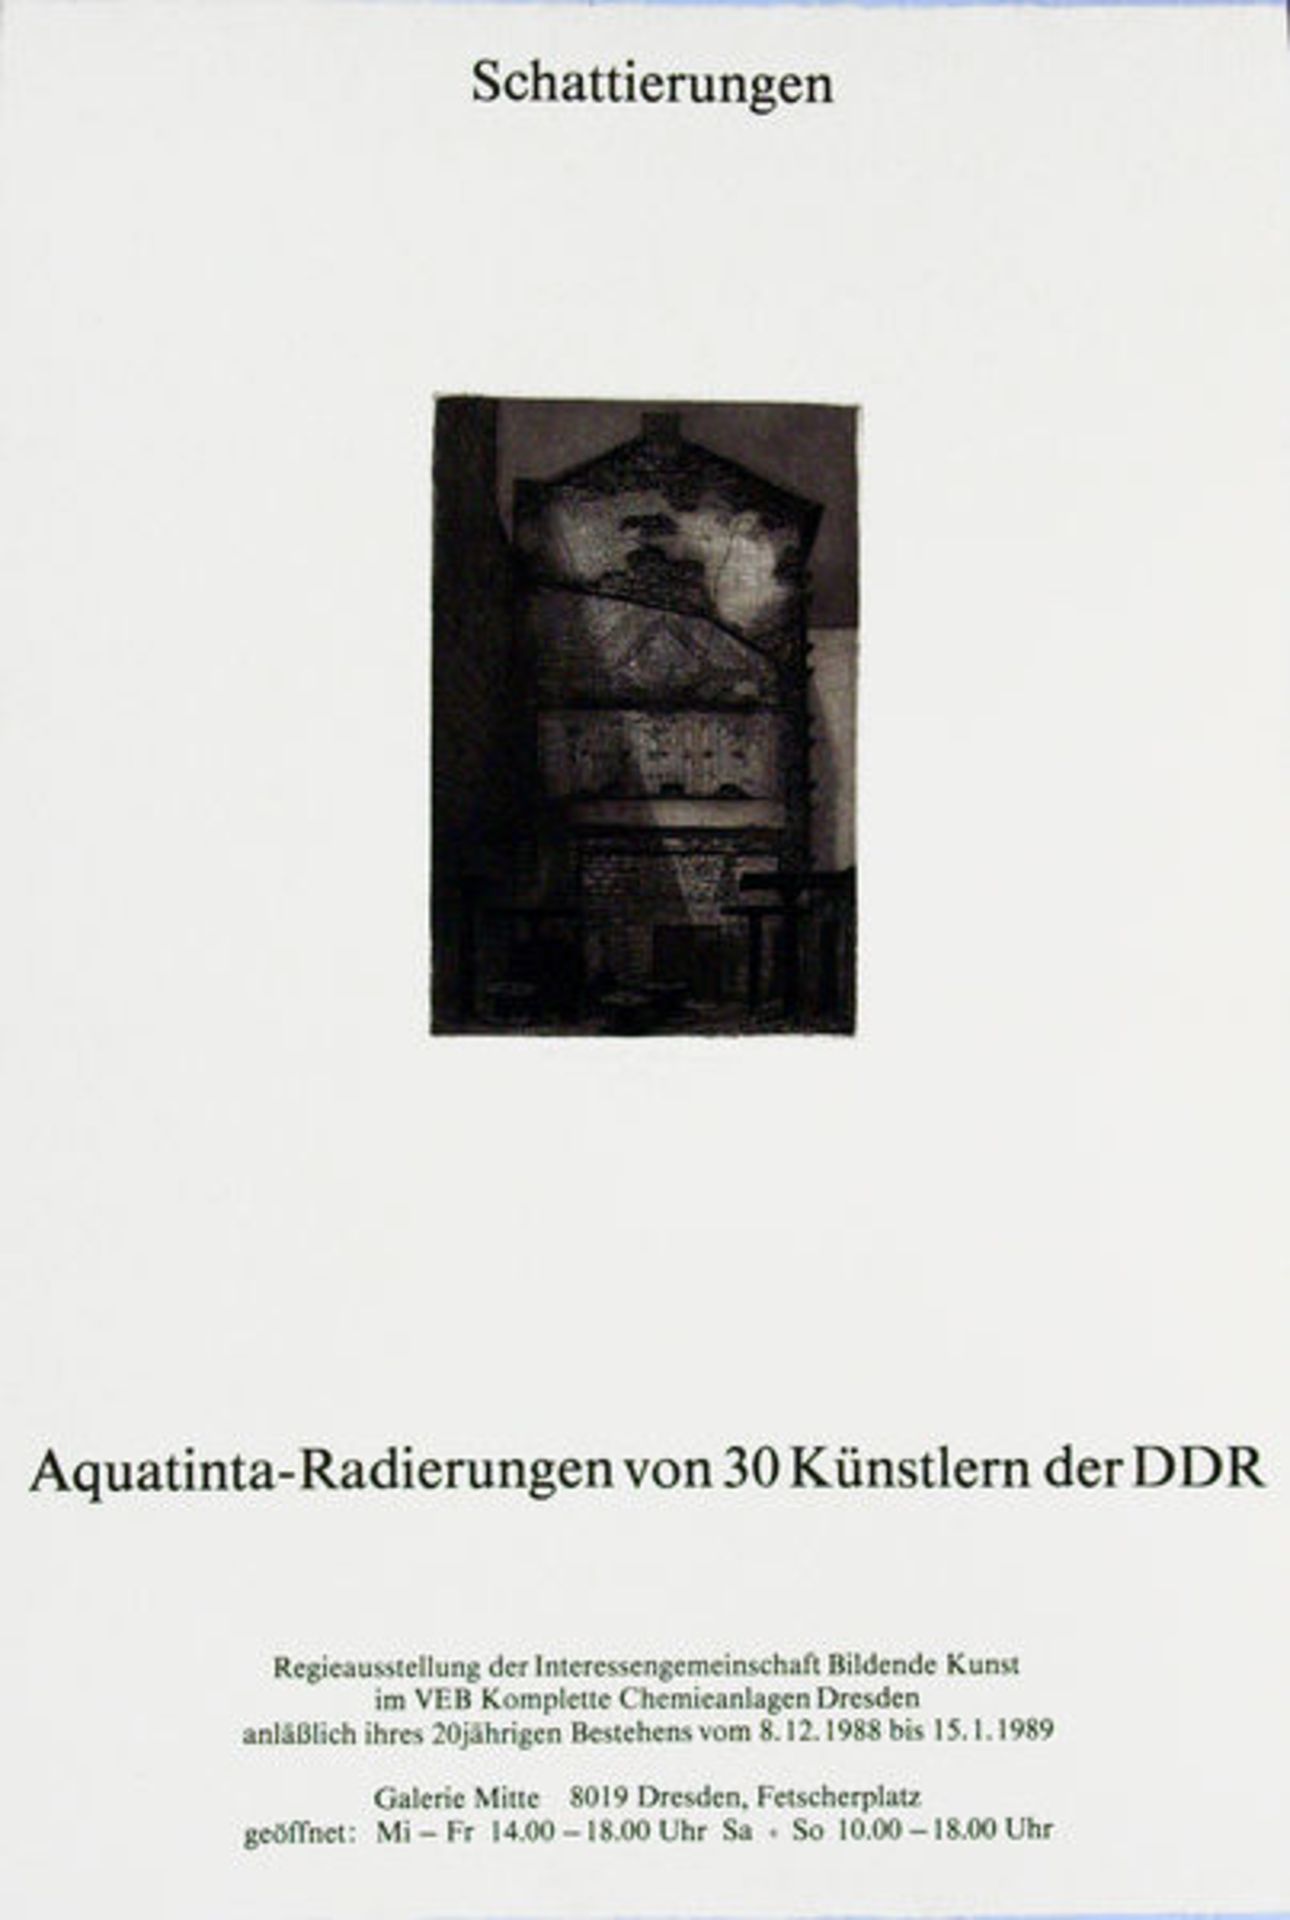 Butzmann, Manfred
Radierung auf Hahnemühle Bütten, 26,7 × 17,8 cm.
Schattierungen (